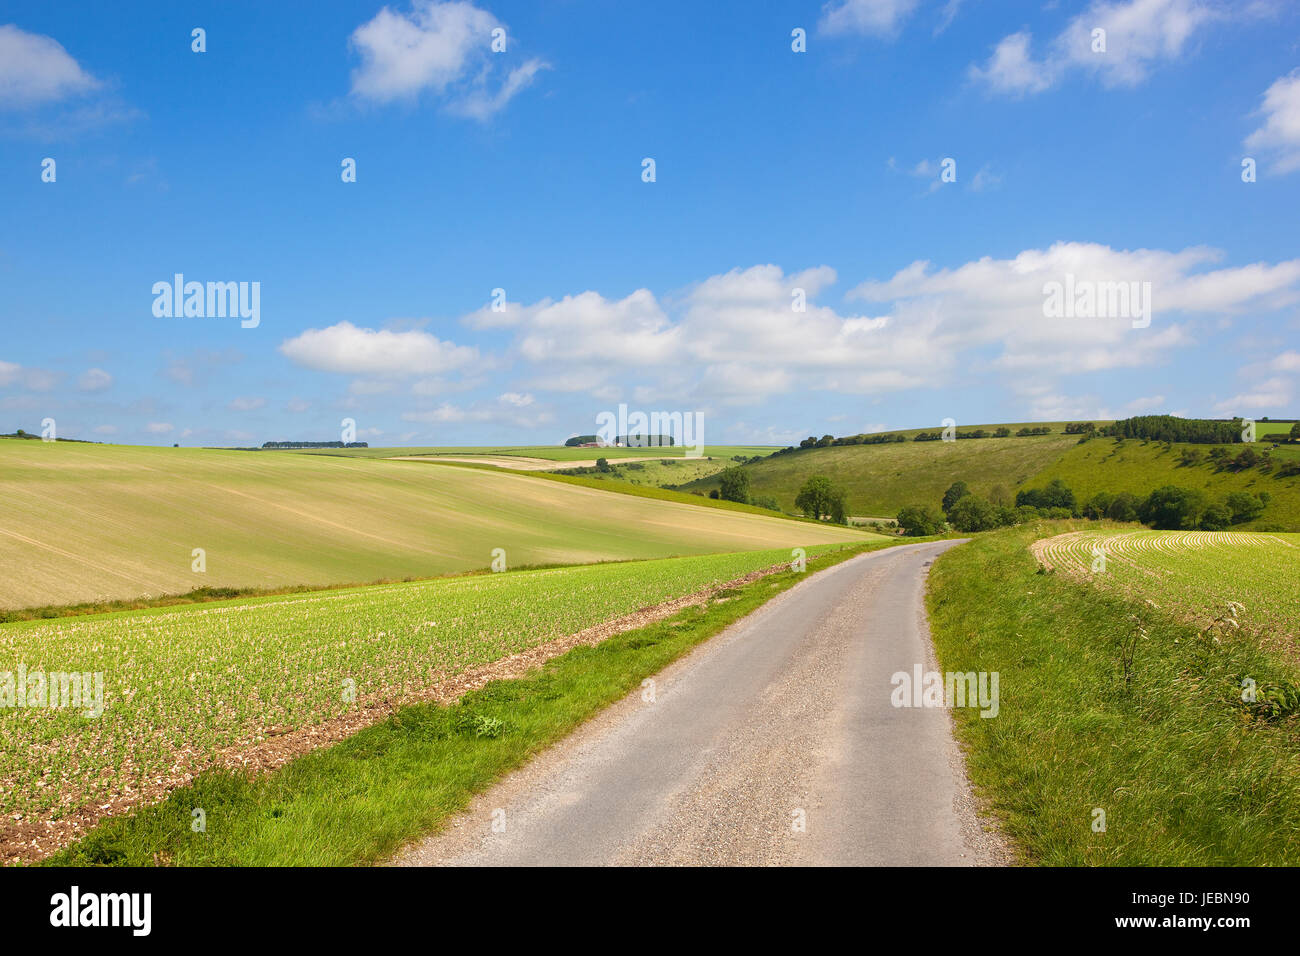 Un paese autostrada con estese coltivazioni di piselli sul terreno calcareo in scenic yorkshire wolds sotto un cielo blu in estate Foto Stock